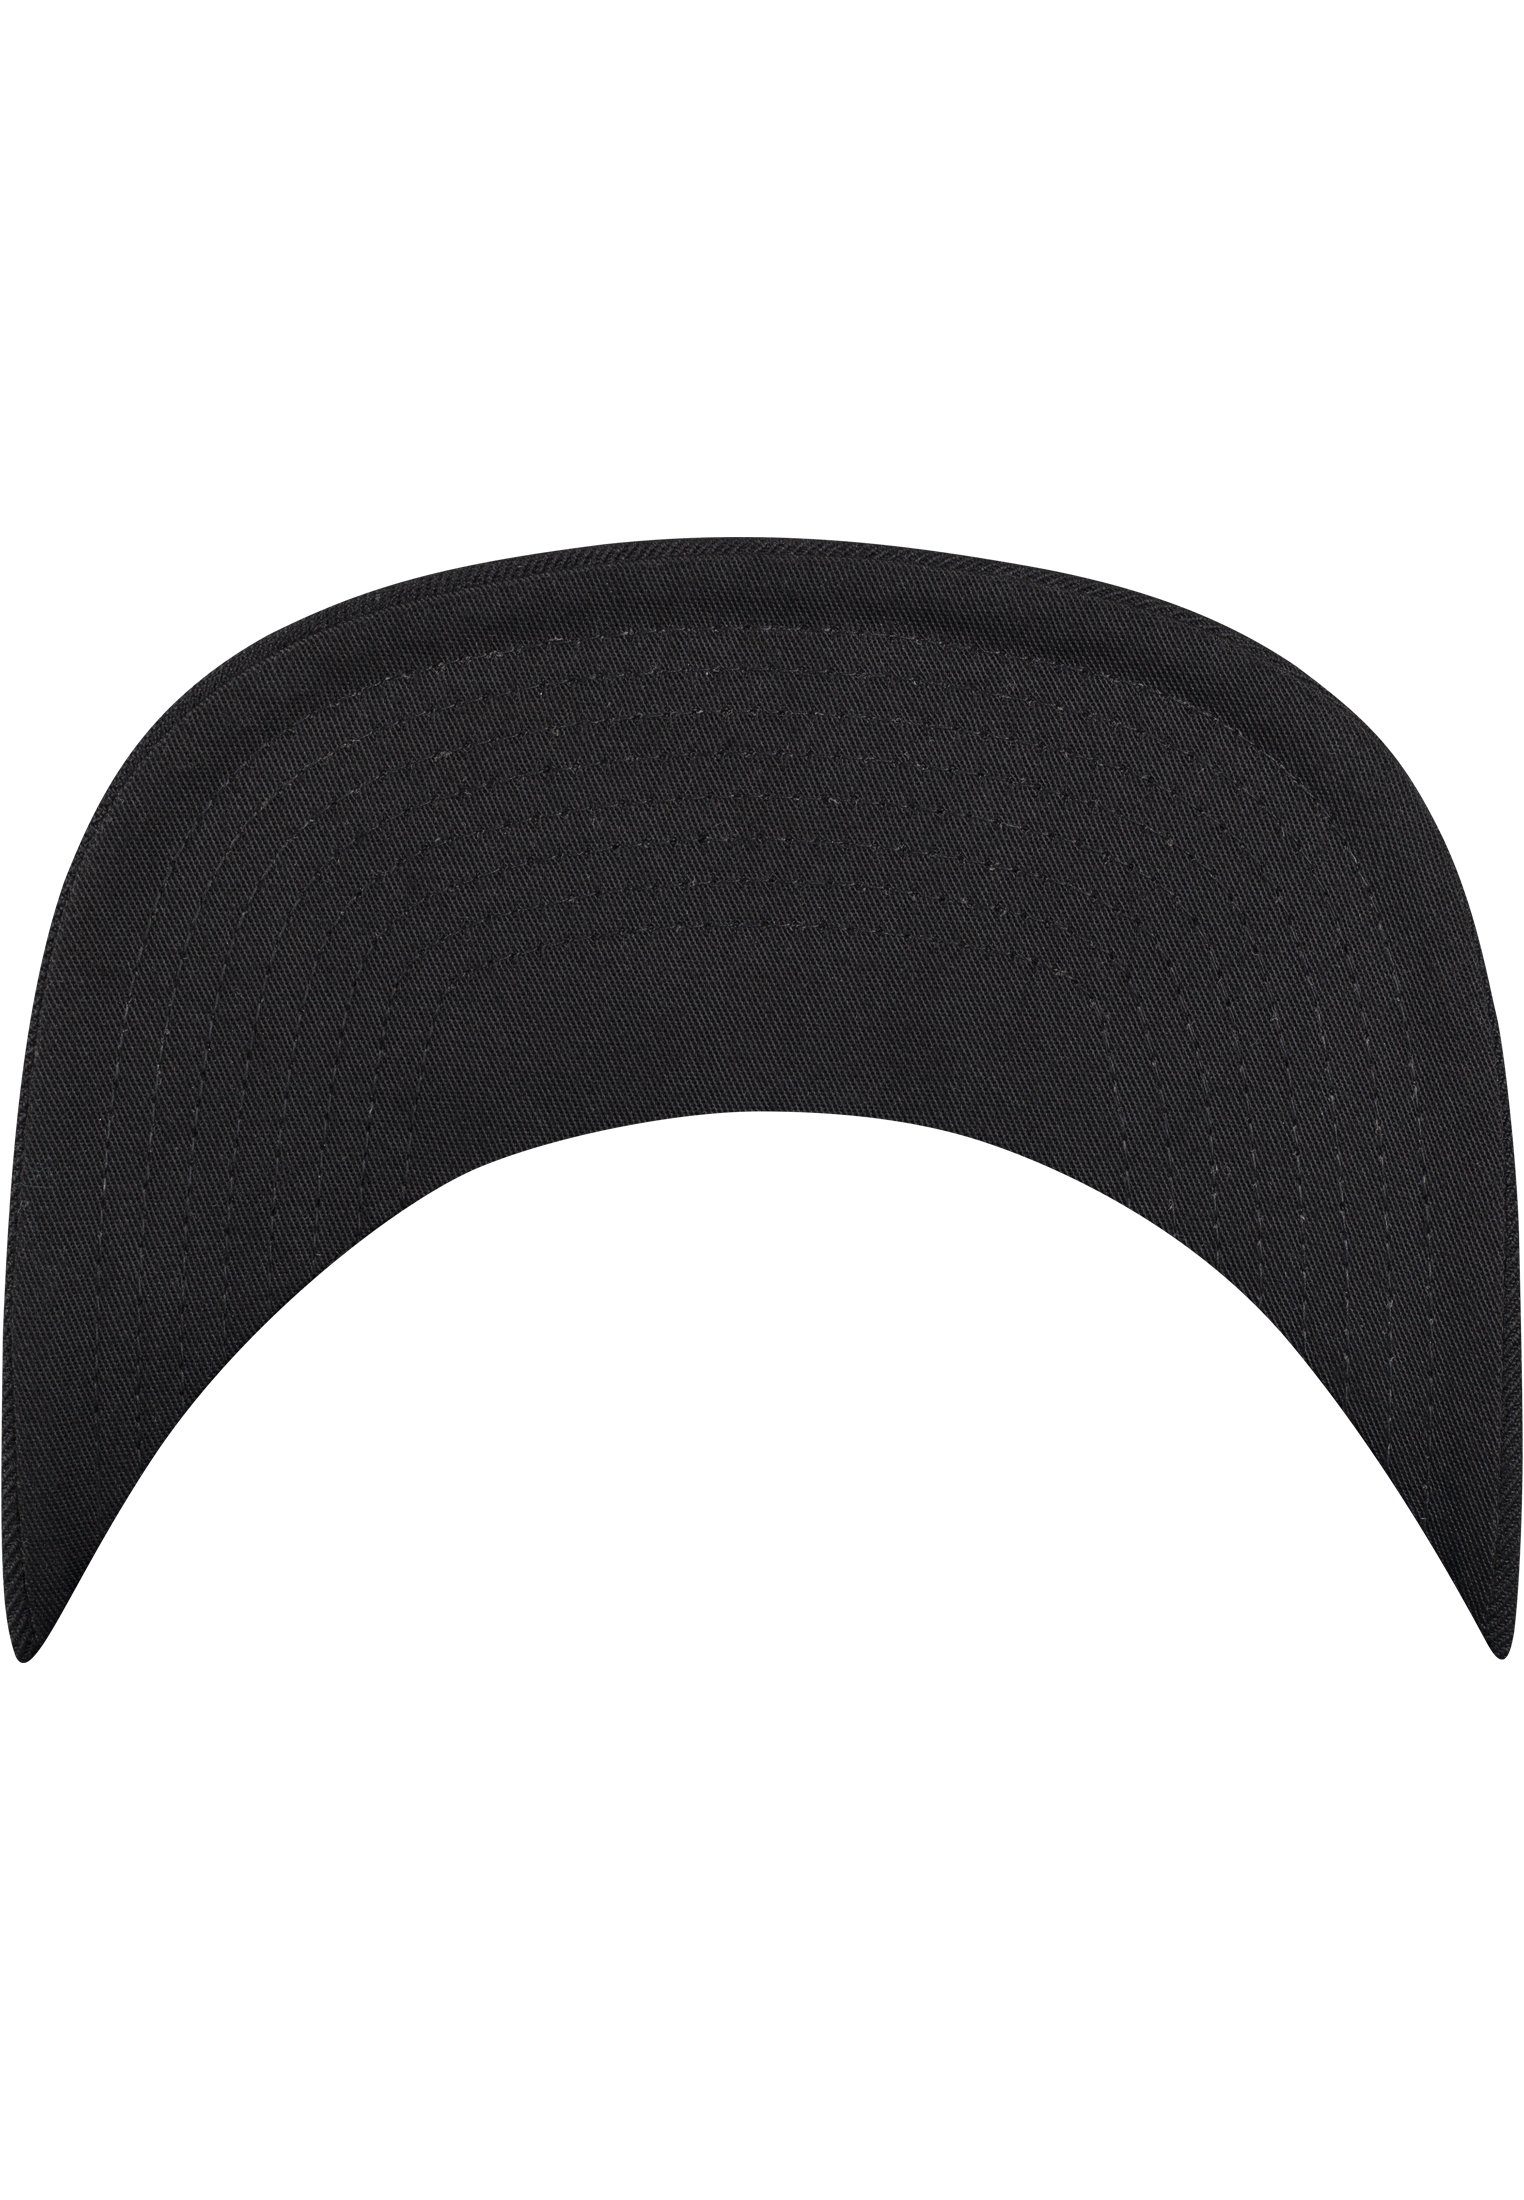 Flex Bandana Snapback Tie Flexfit Snapback black/black Cap